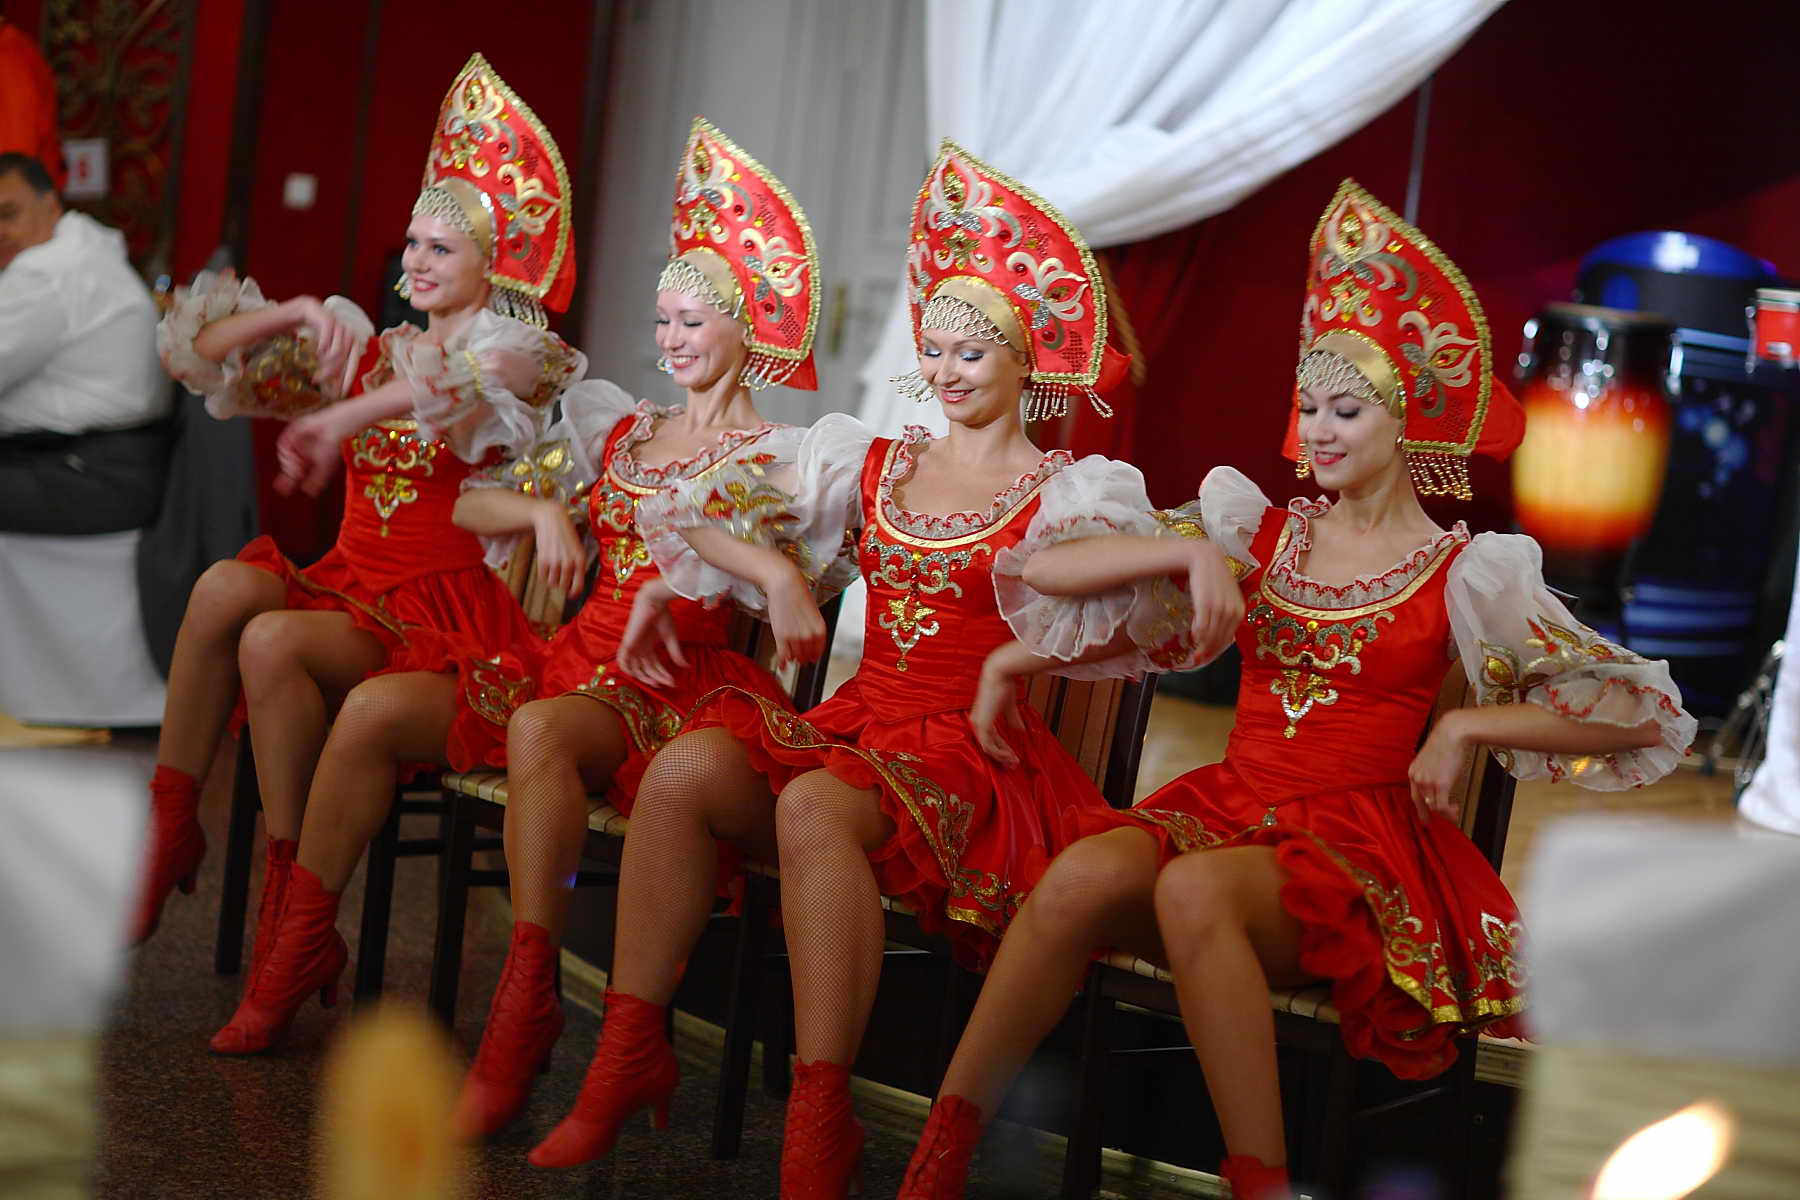 Русский народный танец девушки